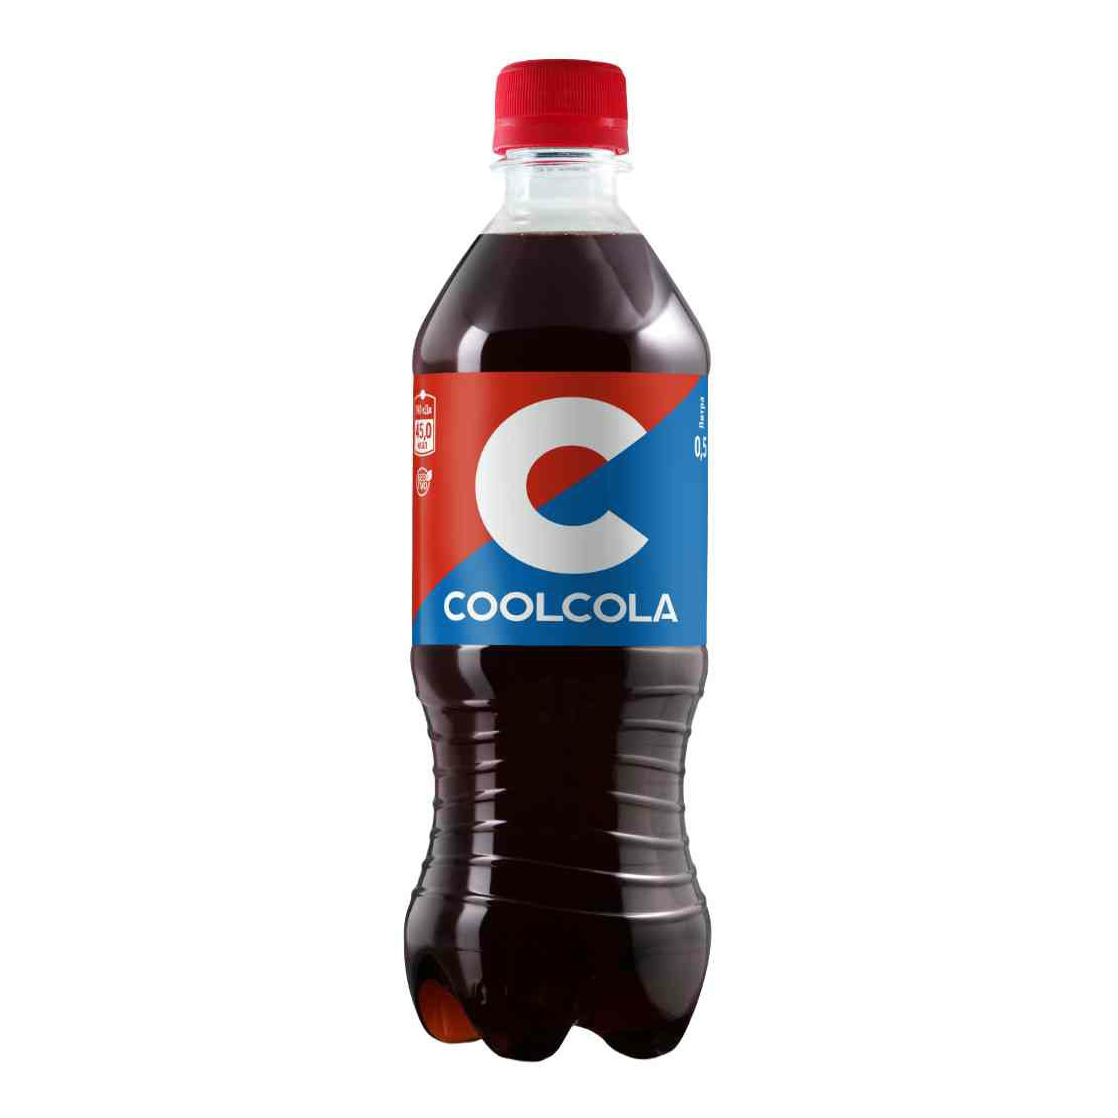 Сильногазированный напиток CoolCola 500 мл